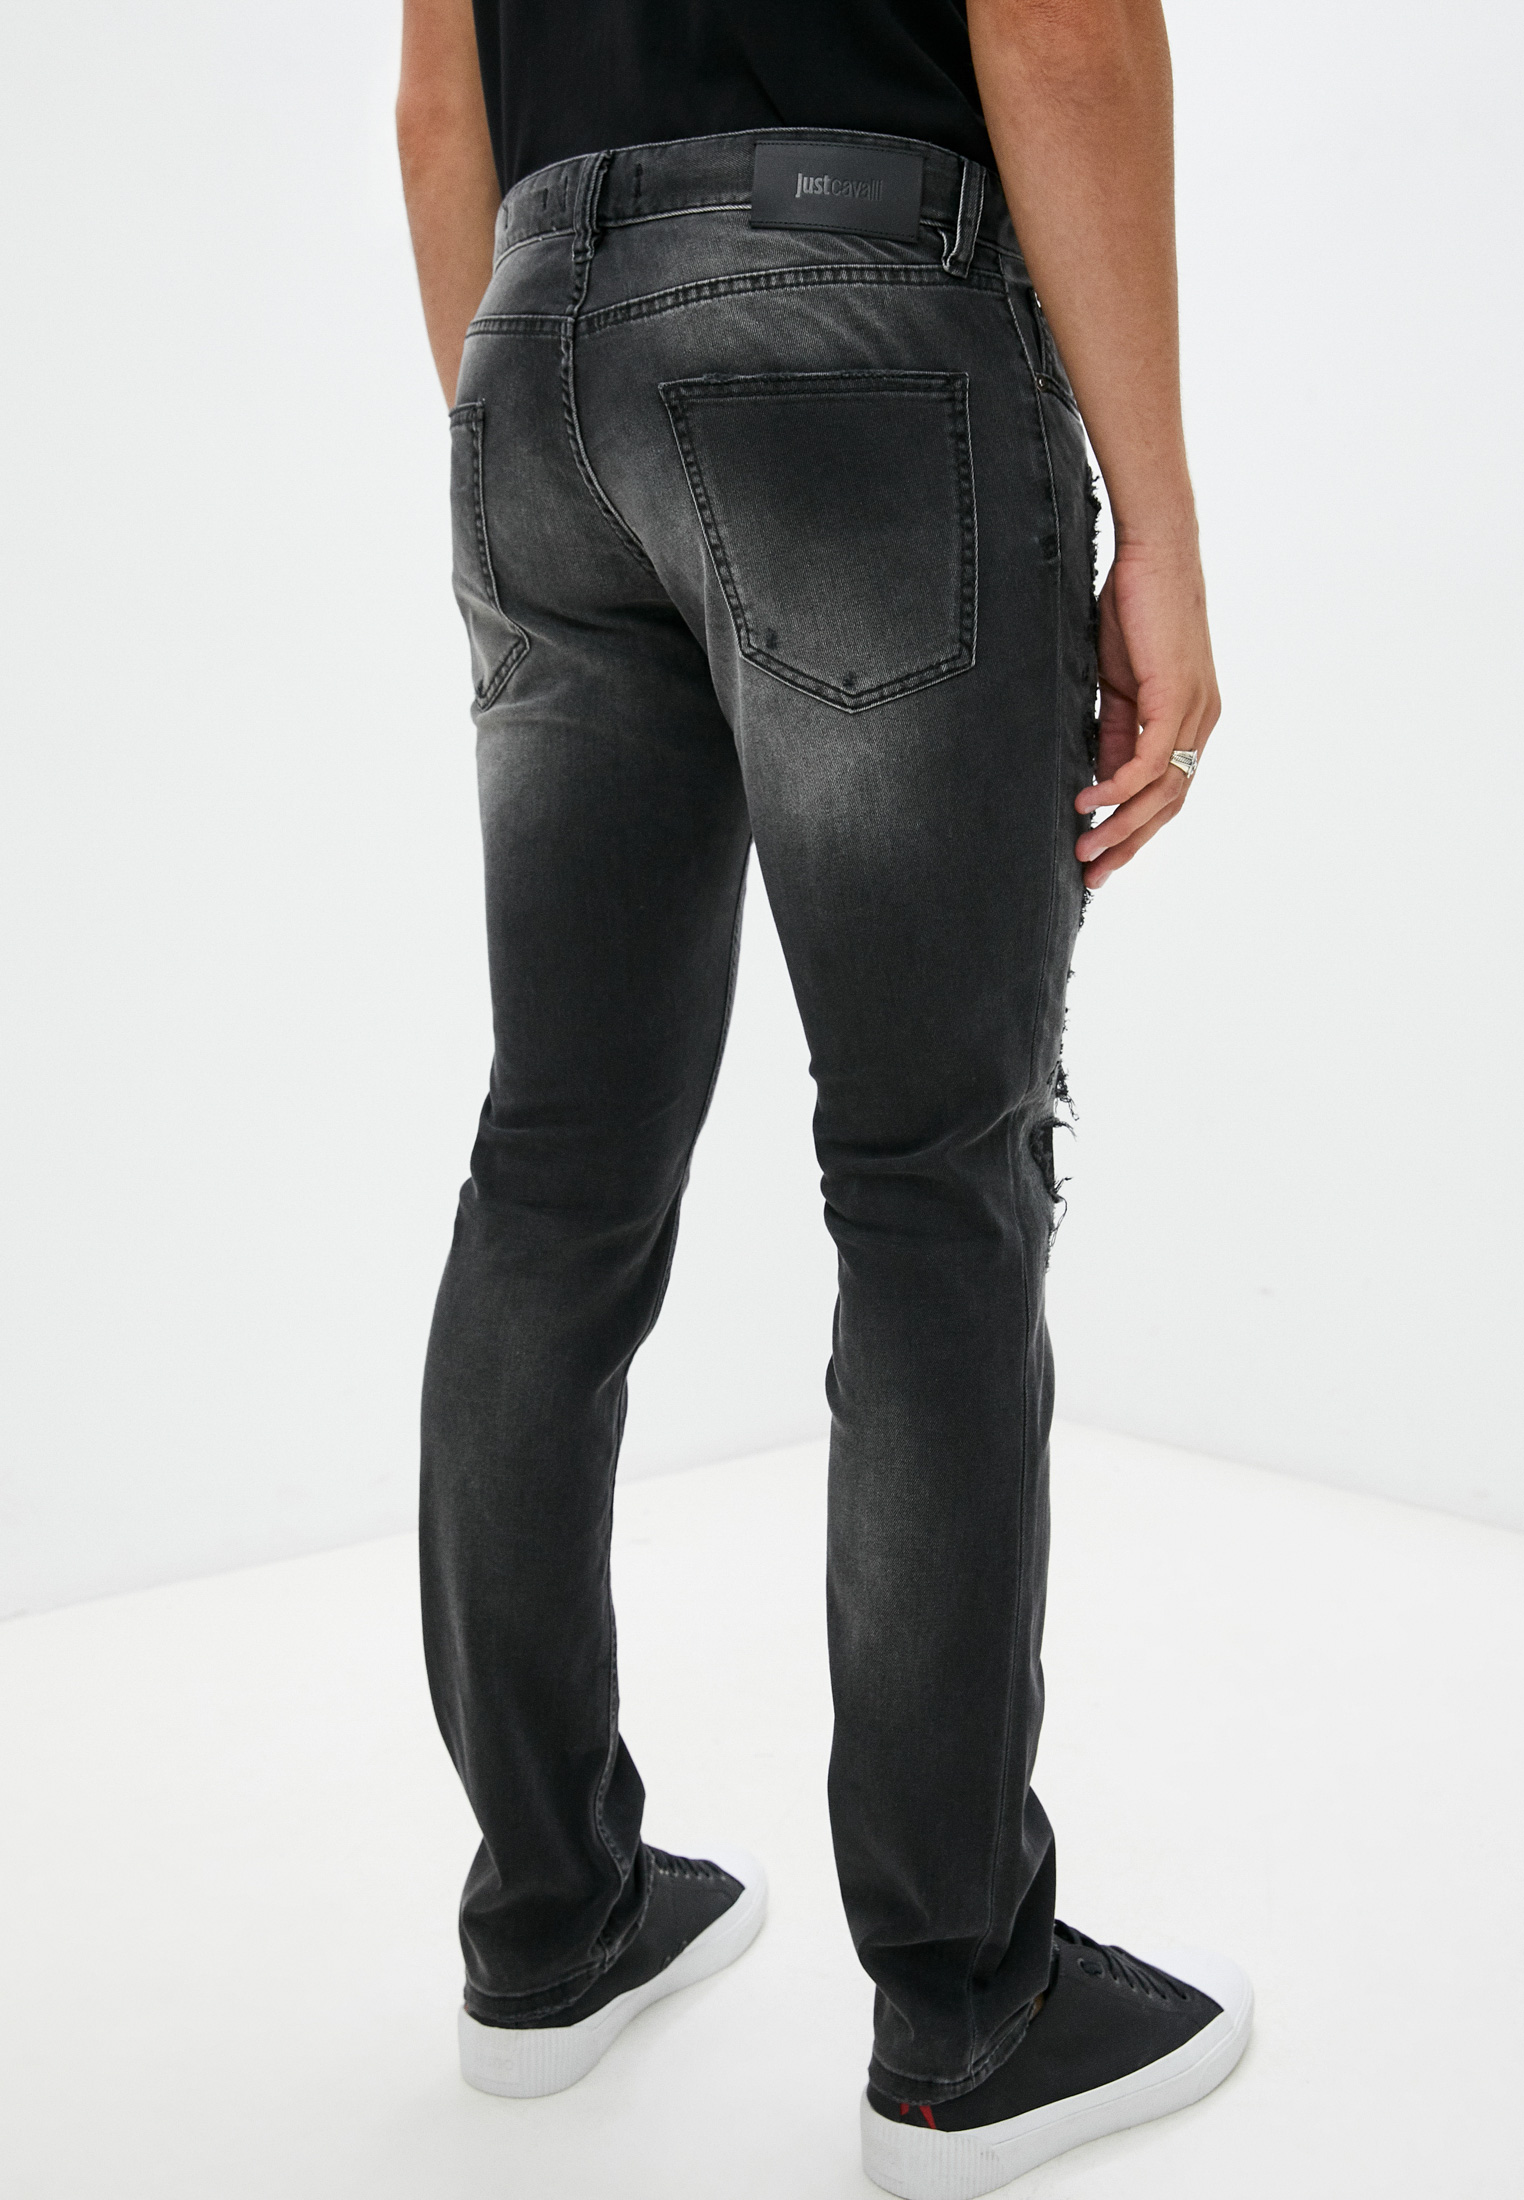 Мужские прямые джинсы Just Cavalli (Джаст Кавалли) S01LA0143N31930: изображение 4